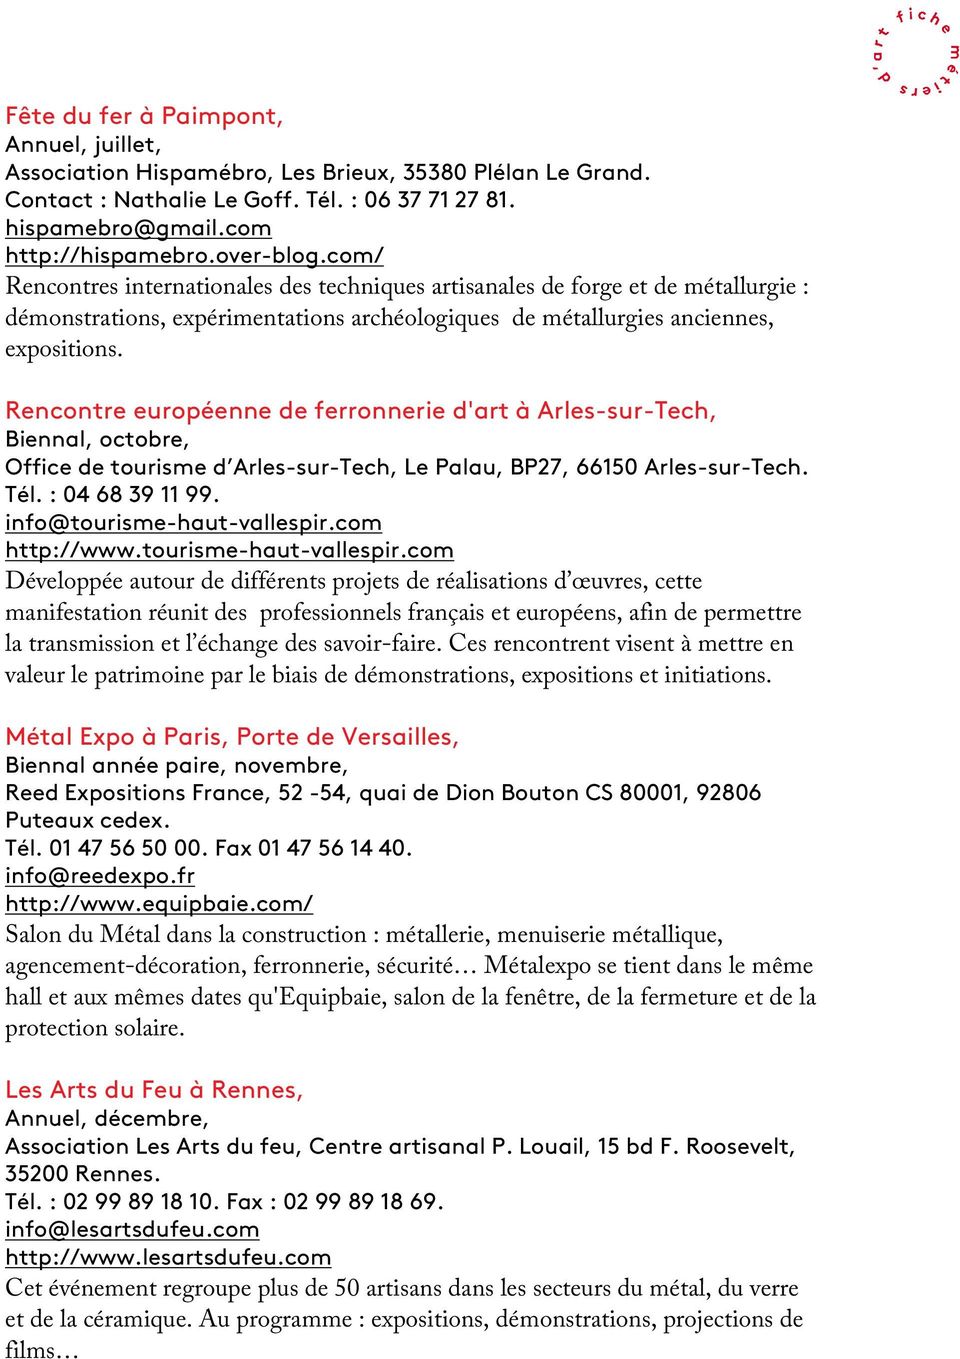 Rencontre européenne de ferronnerie d'art à Arles-sur-Tech, Biennal, octobre, Office de tourisme d Arles-sur-Tech, Le Palau, BP27, 66150 Arles-sur-Tech. Tél. : 04 68 39 11 99.